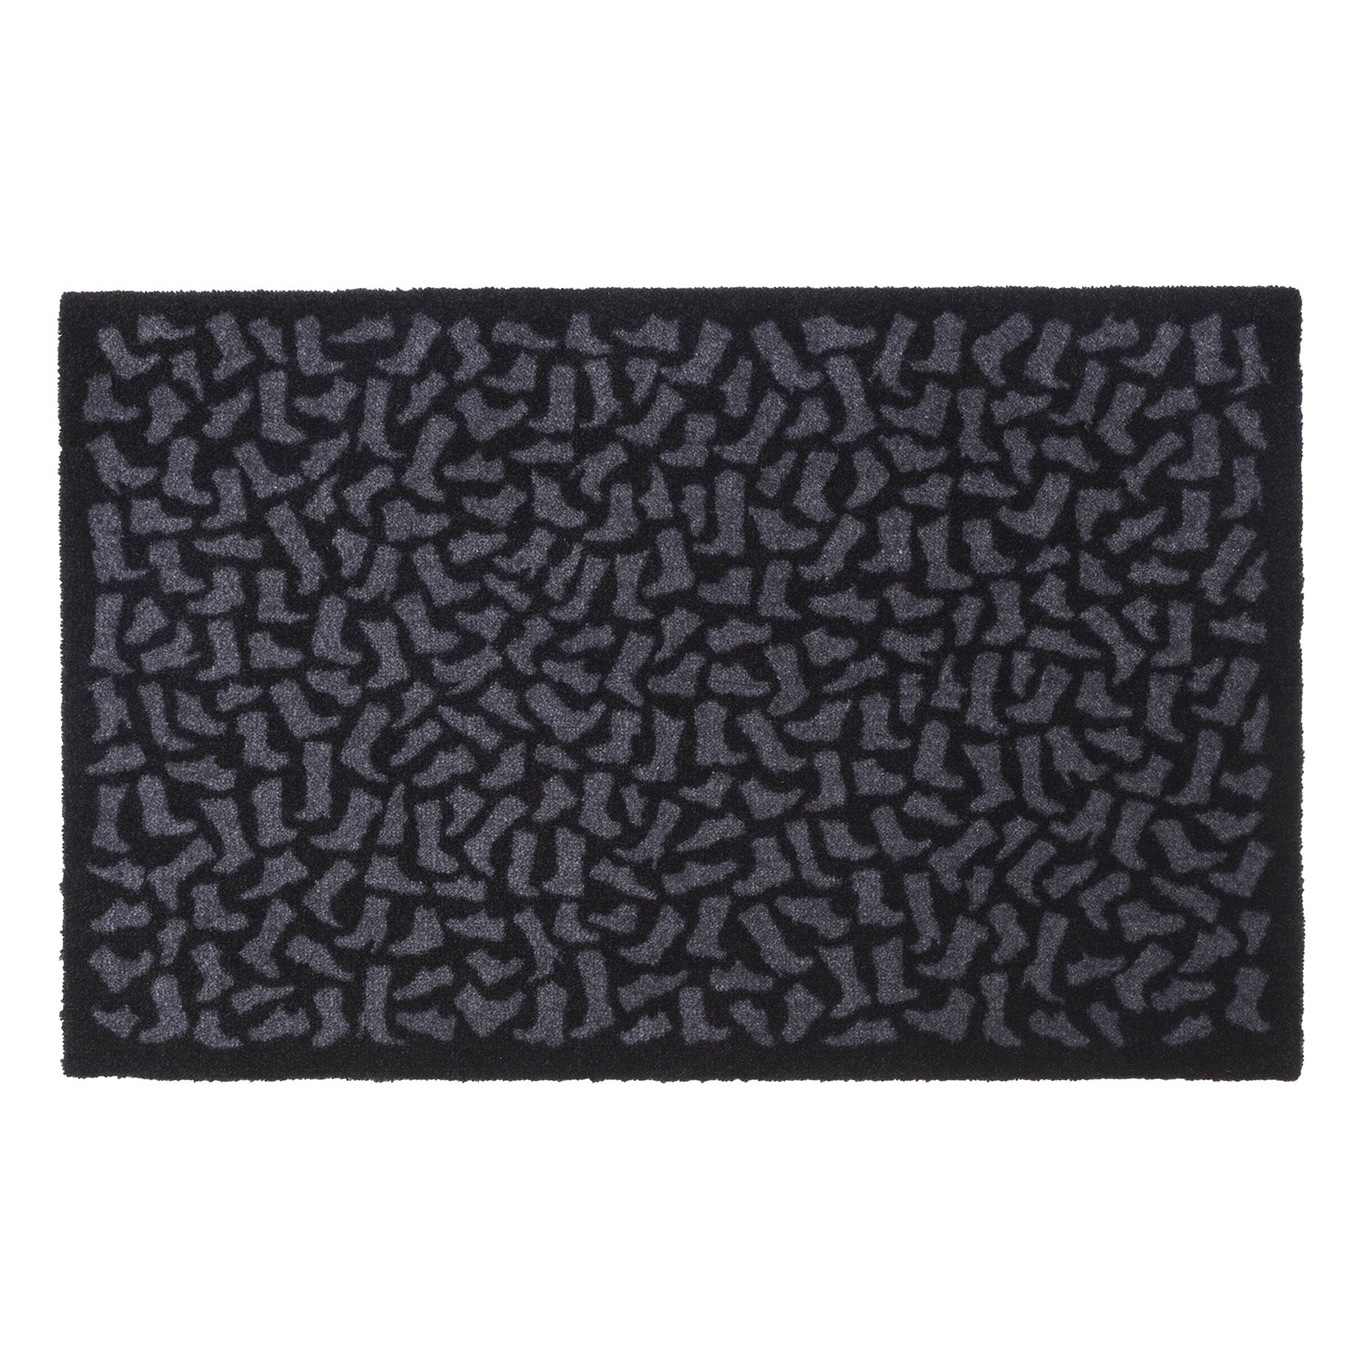 Footwear Doormat 60x90cm, Black/Grey